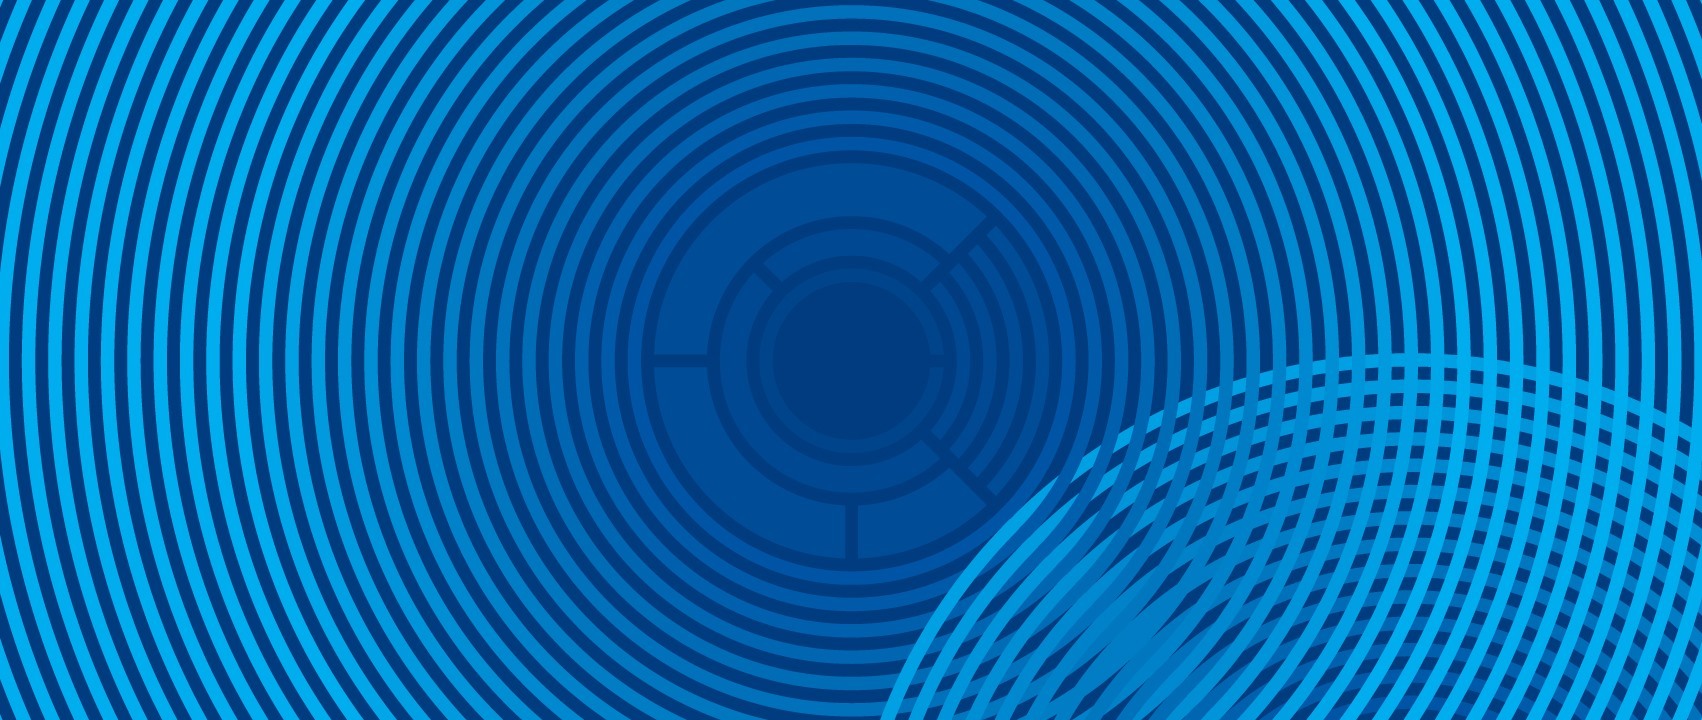 Motif bleu abstrait avec cercles concentriques et grille dynamique évoquant l'innovation.